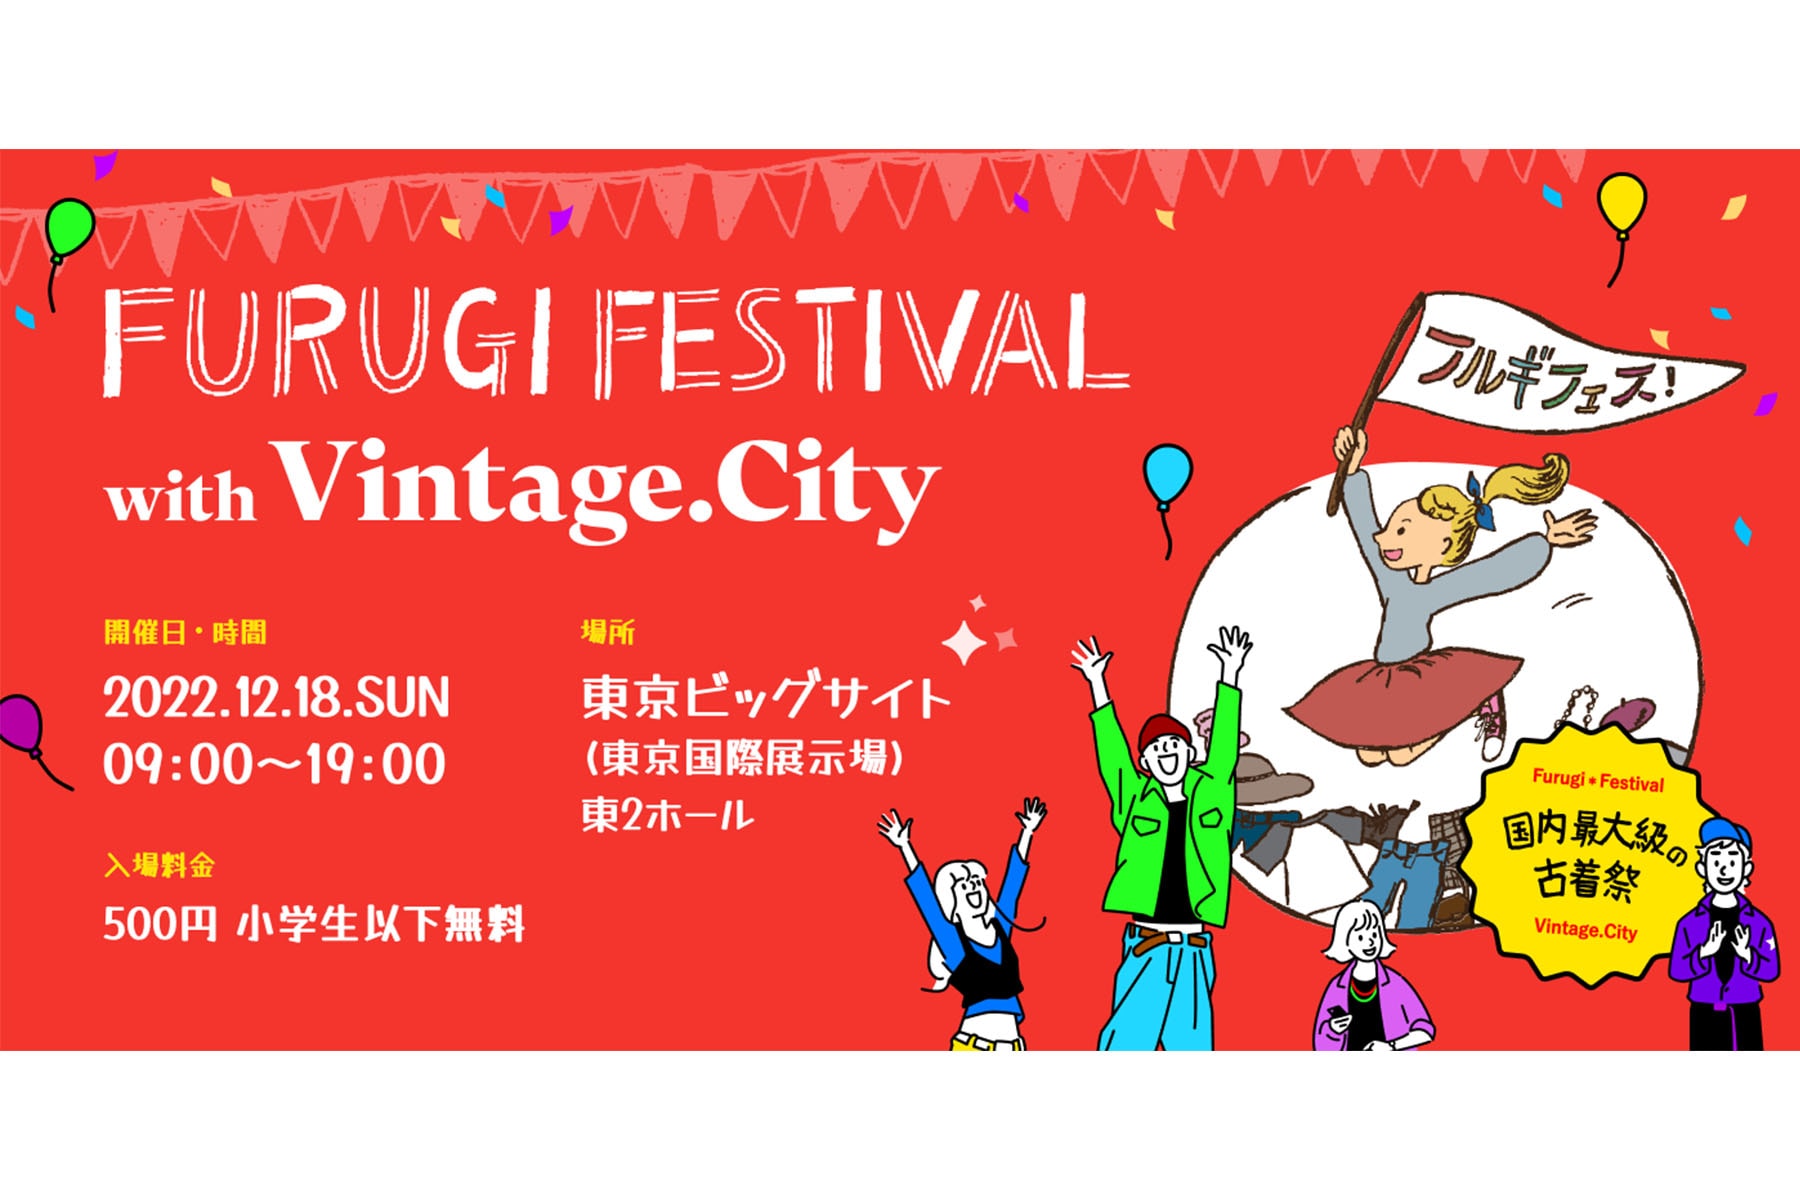 日本最大規模古著活動《Furugi Festival with Vintage.City》即將登場